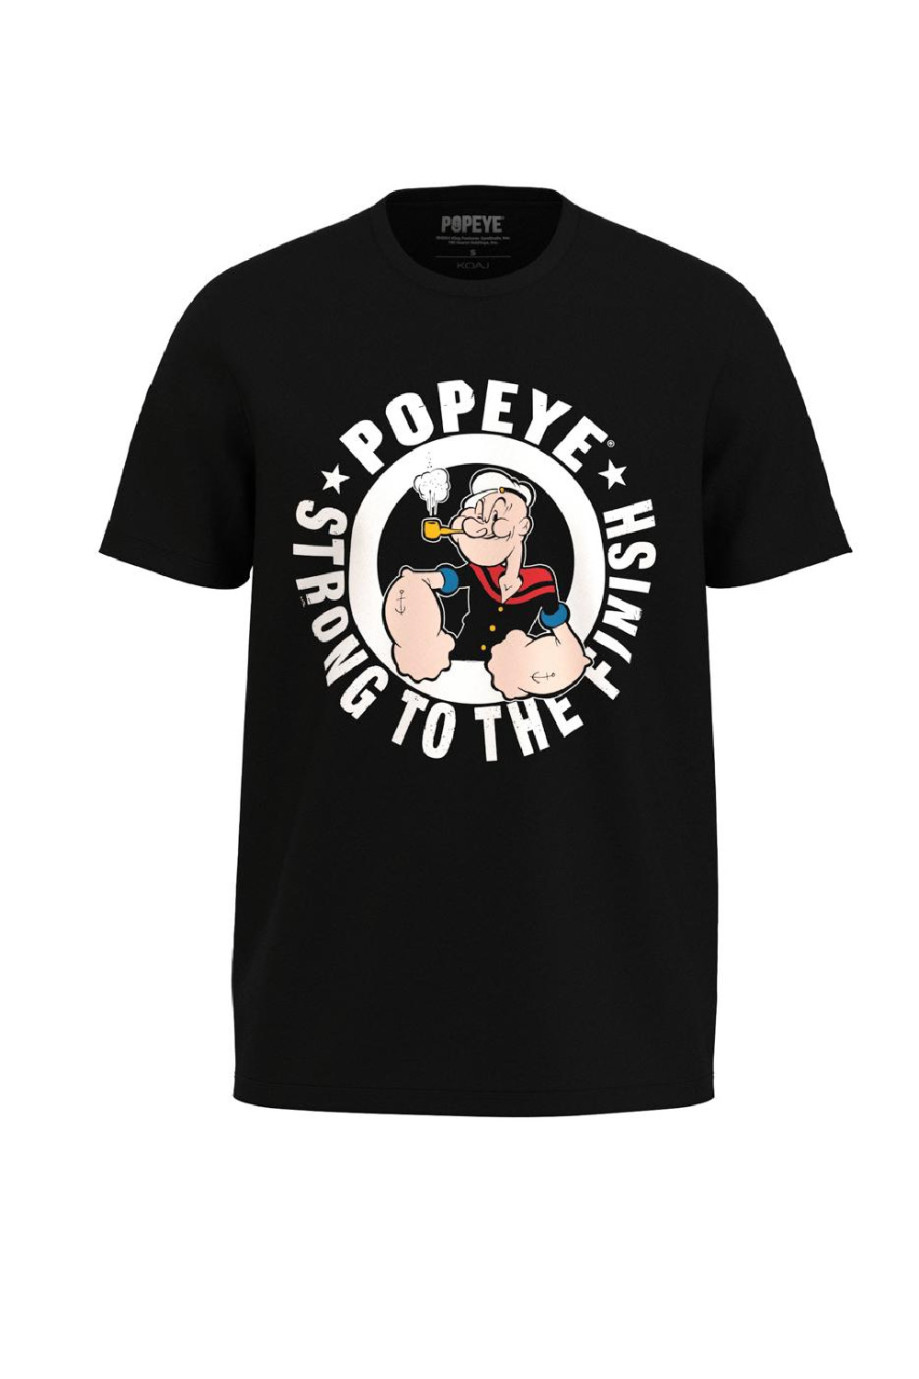 Camiseta unicolor con manga corta y diseño en frente de Popeye